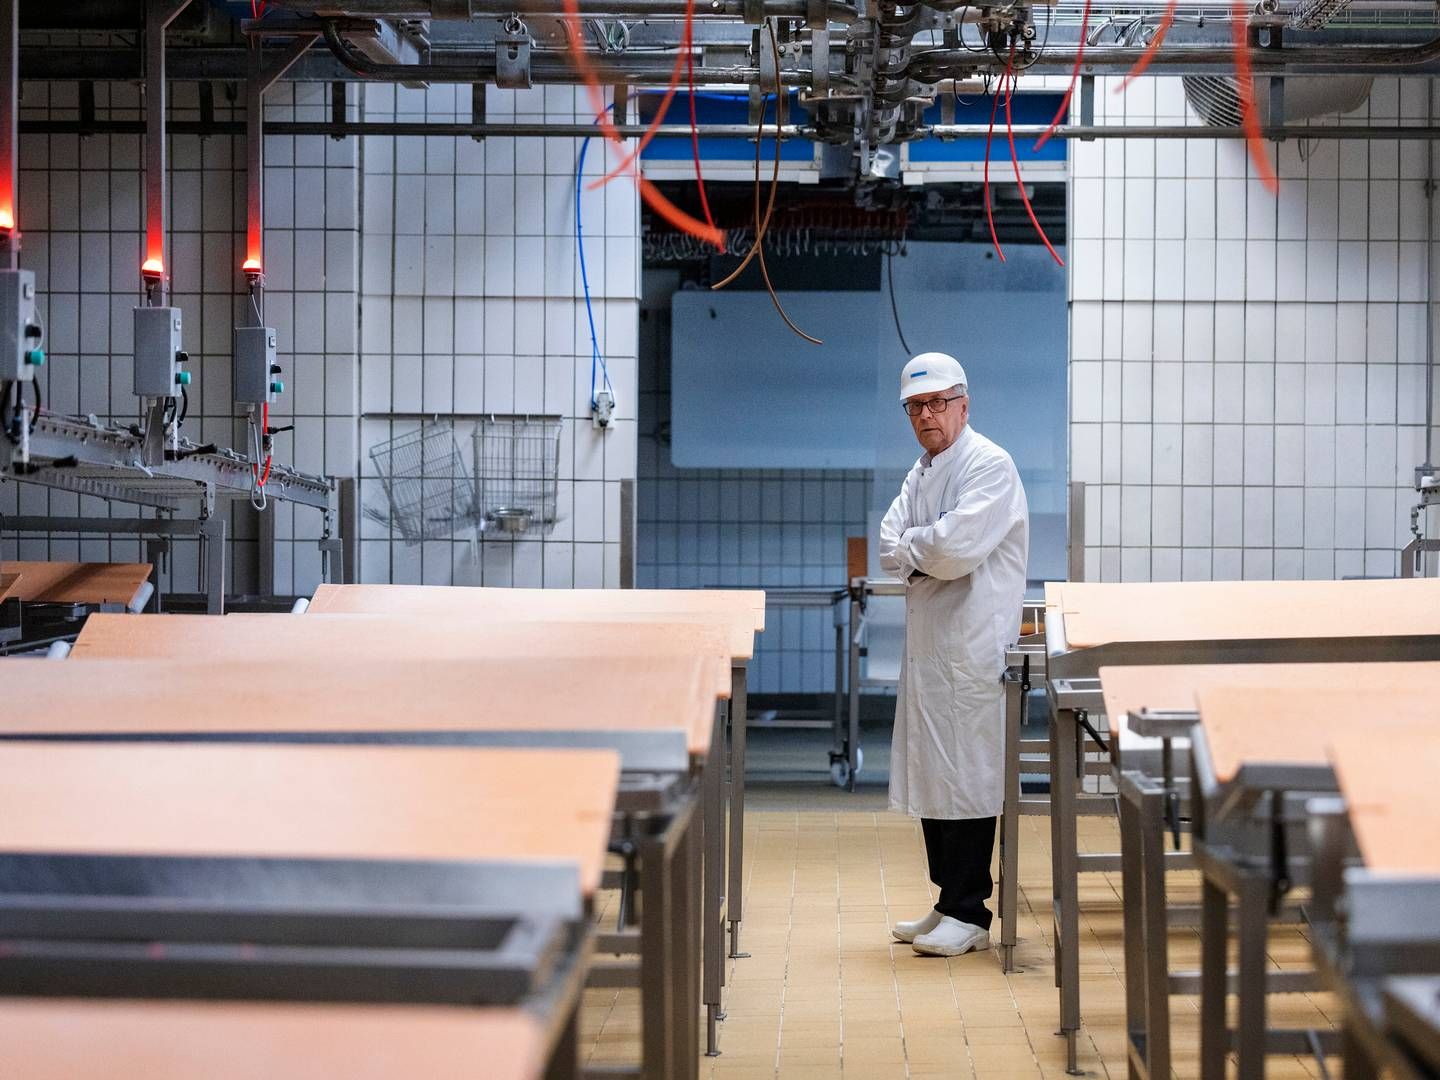 Kurt Skare gik efter 50 års virksomhedsdrift konkurs med sit livsværk Skare Meat Packers i februar 2023. Om han nu risikerer en konkurskarantæne, fremgår ikke af omtalen i kreditorinformationen. | Foto: Casper Dalhoff